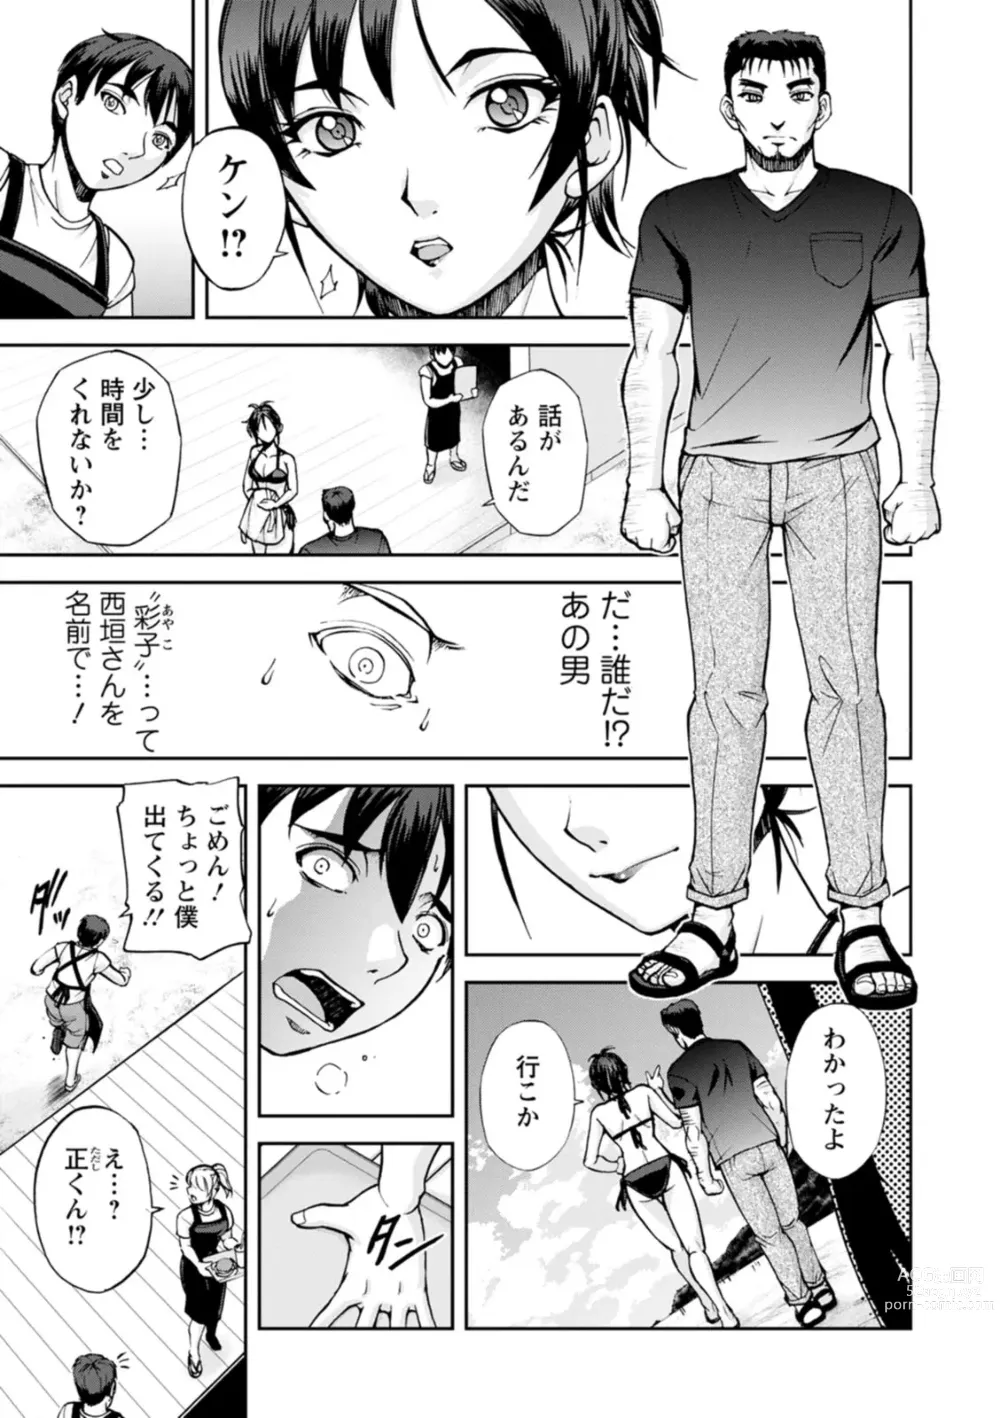 Page 25 of doujinshi Nishigaki-san is stylish and inane